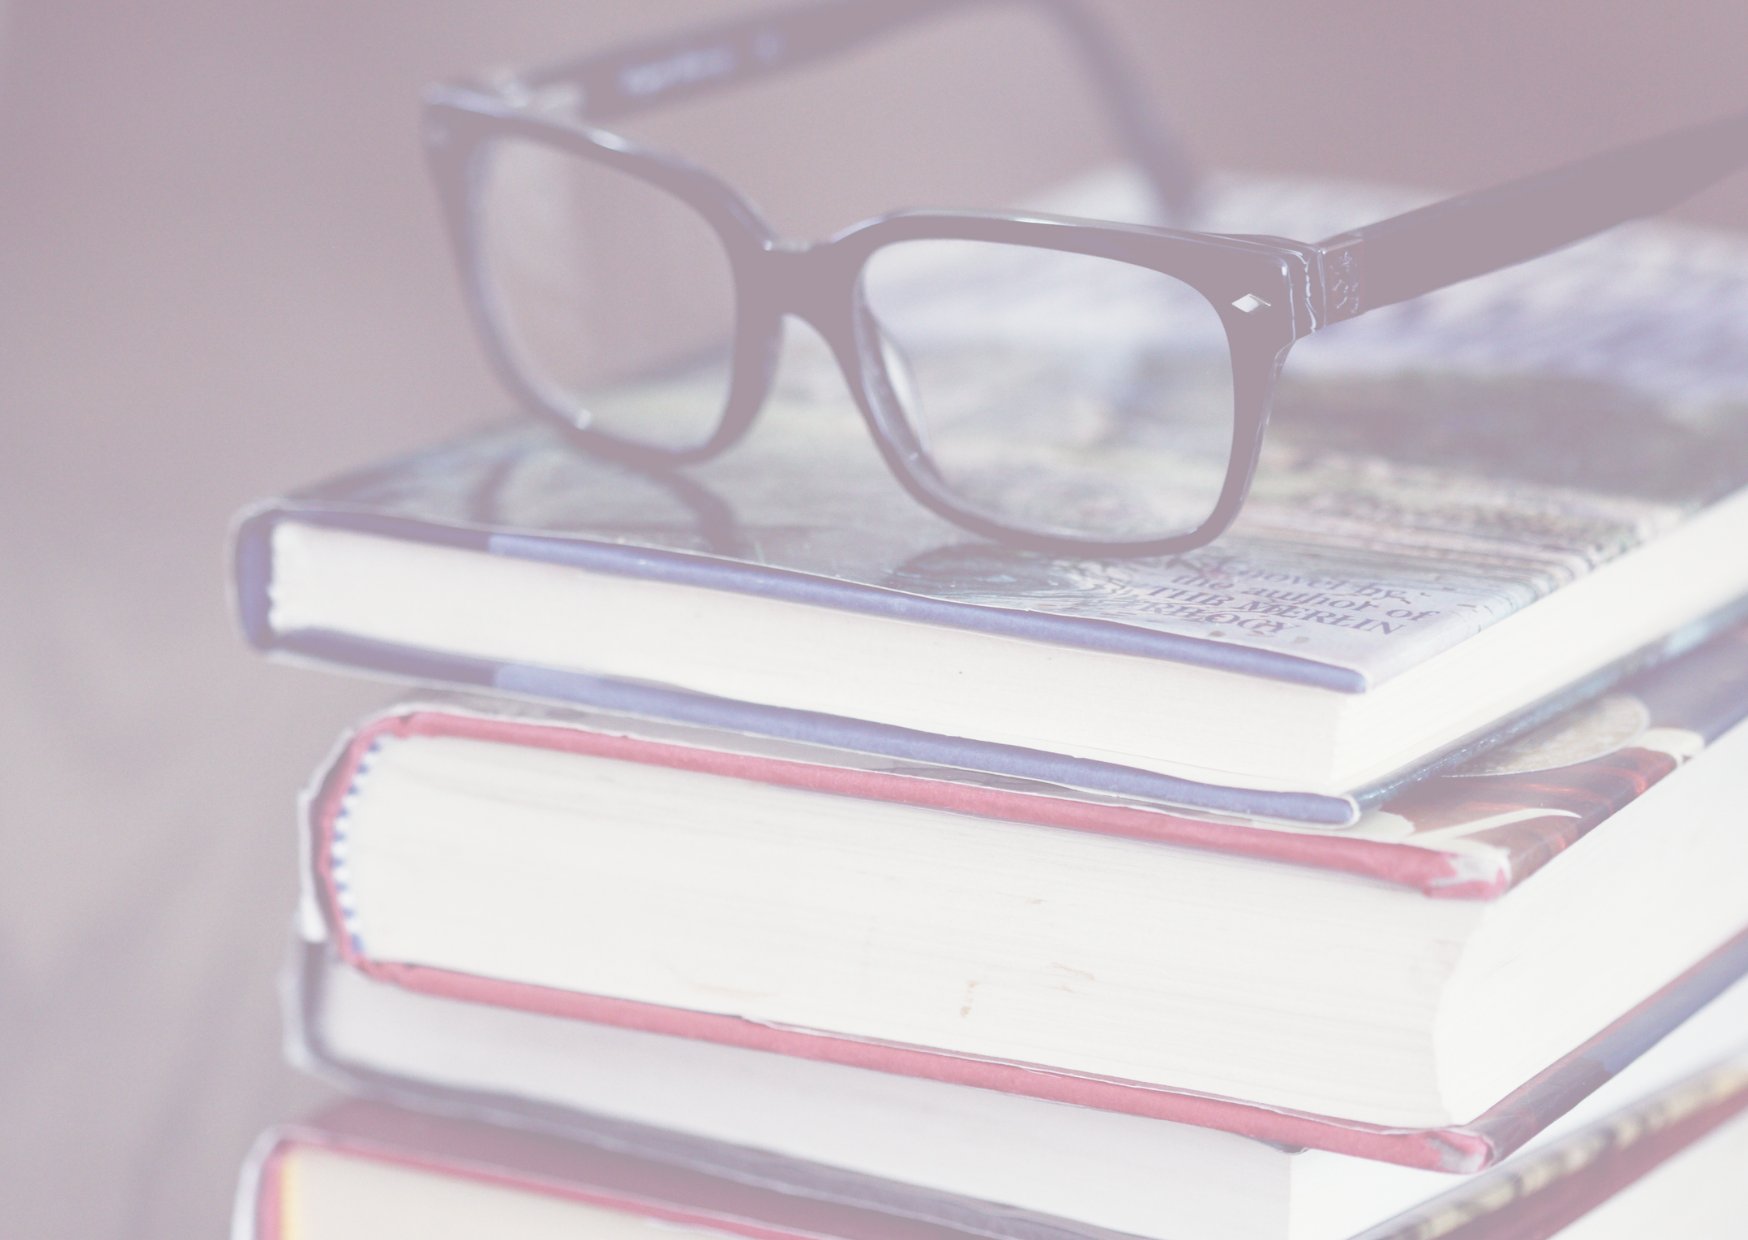 Ein Stapel von gebrauchten Büchern mit einem Paar schwarzer Brillen oben auf. Die Bücher scheinen gut gelesen zu sein, was auf einen eifrigen Leser oder einen engagierten Studenten hindeutet. Die sanften Farben und die weiche Fokussierung verleihen dem Bild eine ruhige und studiöse Atmosphäre.